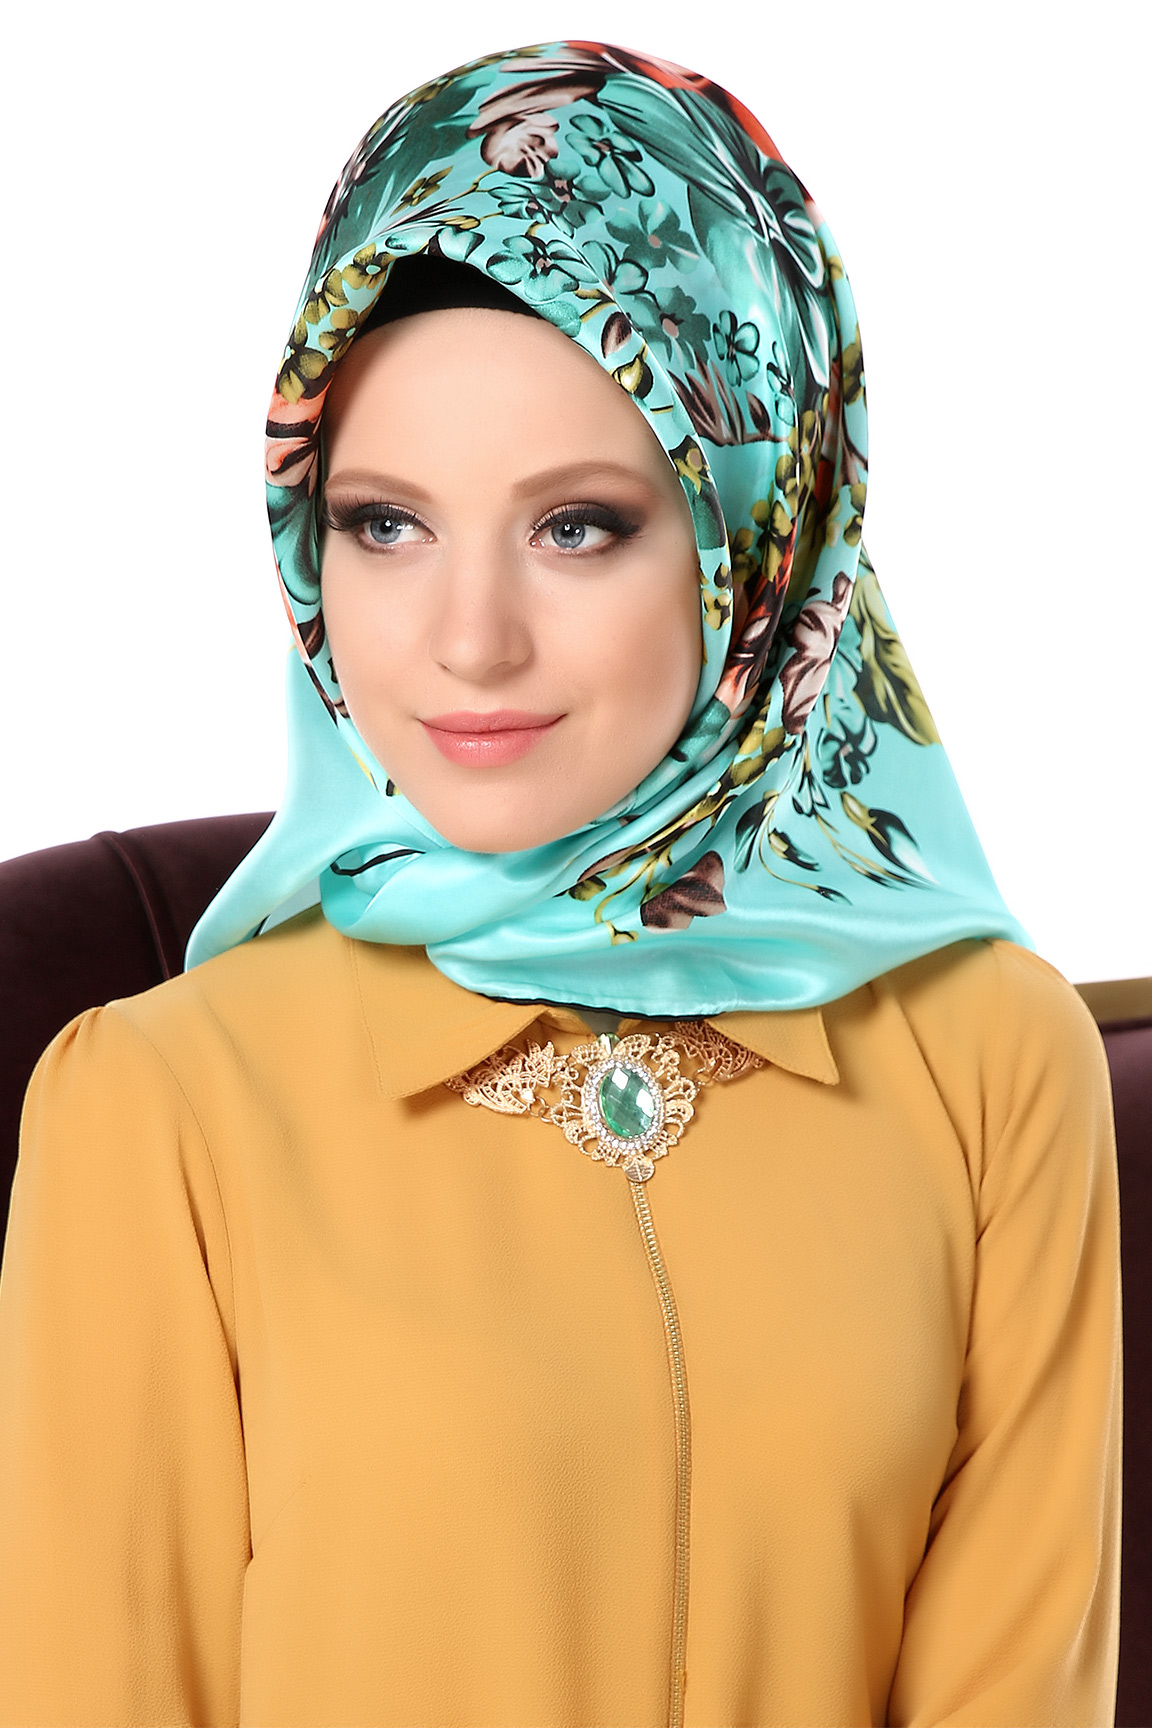 5457 1 موديلات حجابات تركية - اشكال لفات حجاب تركية فطوم الرهيبه